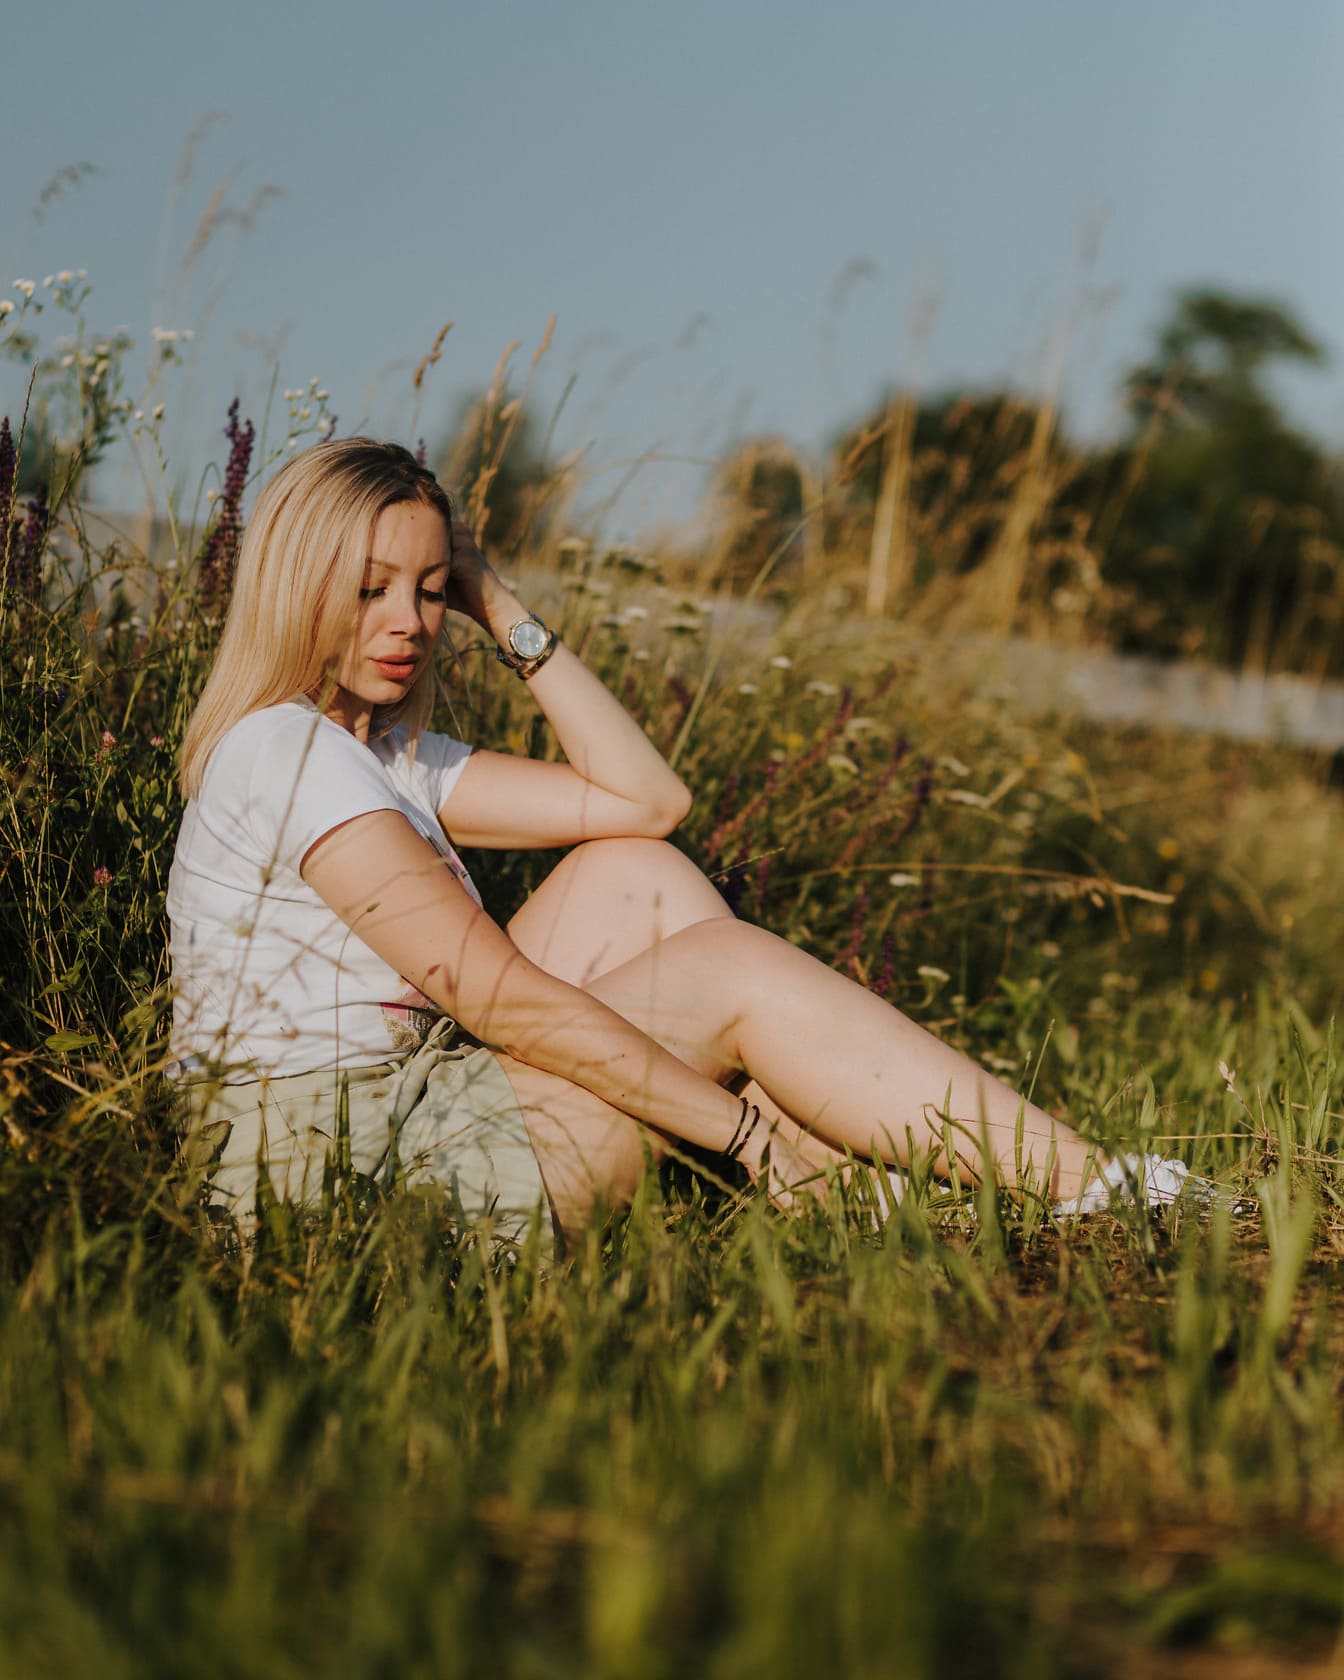 화려한 금발 머리 젊은 여자가 풀밭에 앉아 있습니다